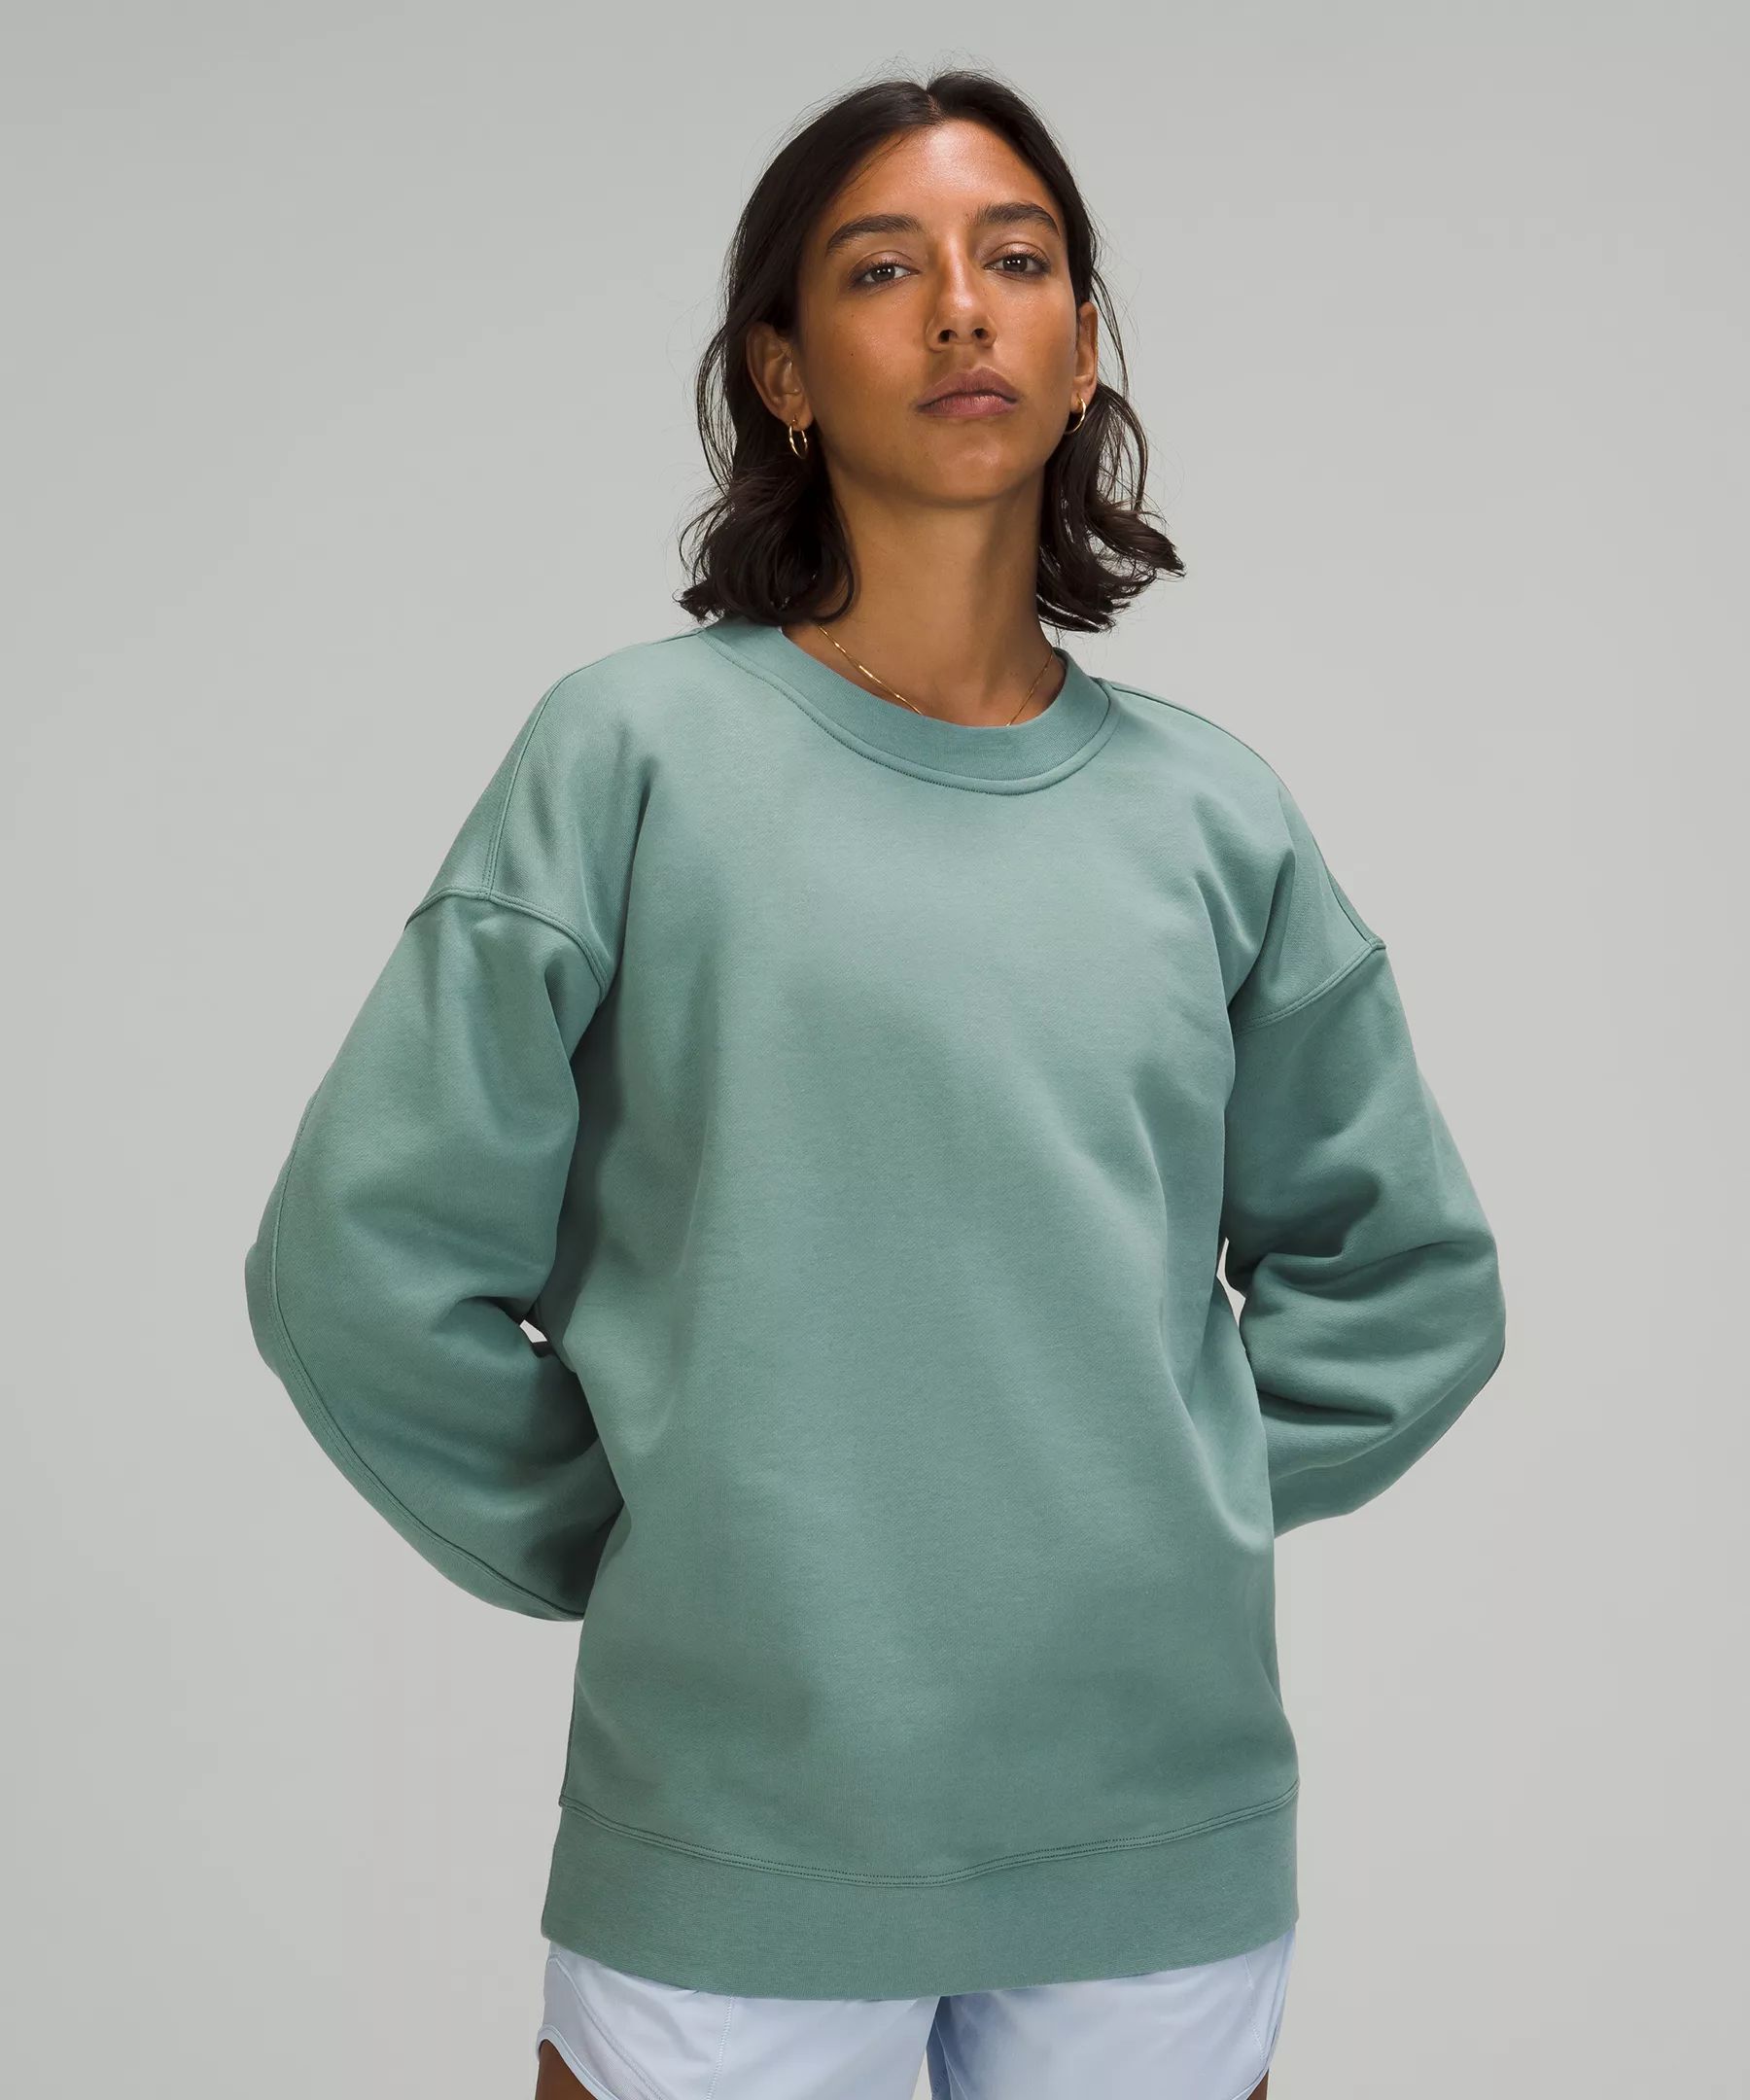 Perfectly Oversized Crew | Women's Hoodies & Sweatshirts | lululemon | Lululemon (US)